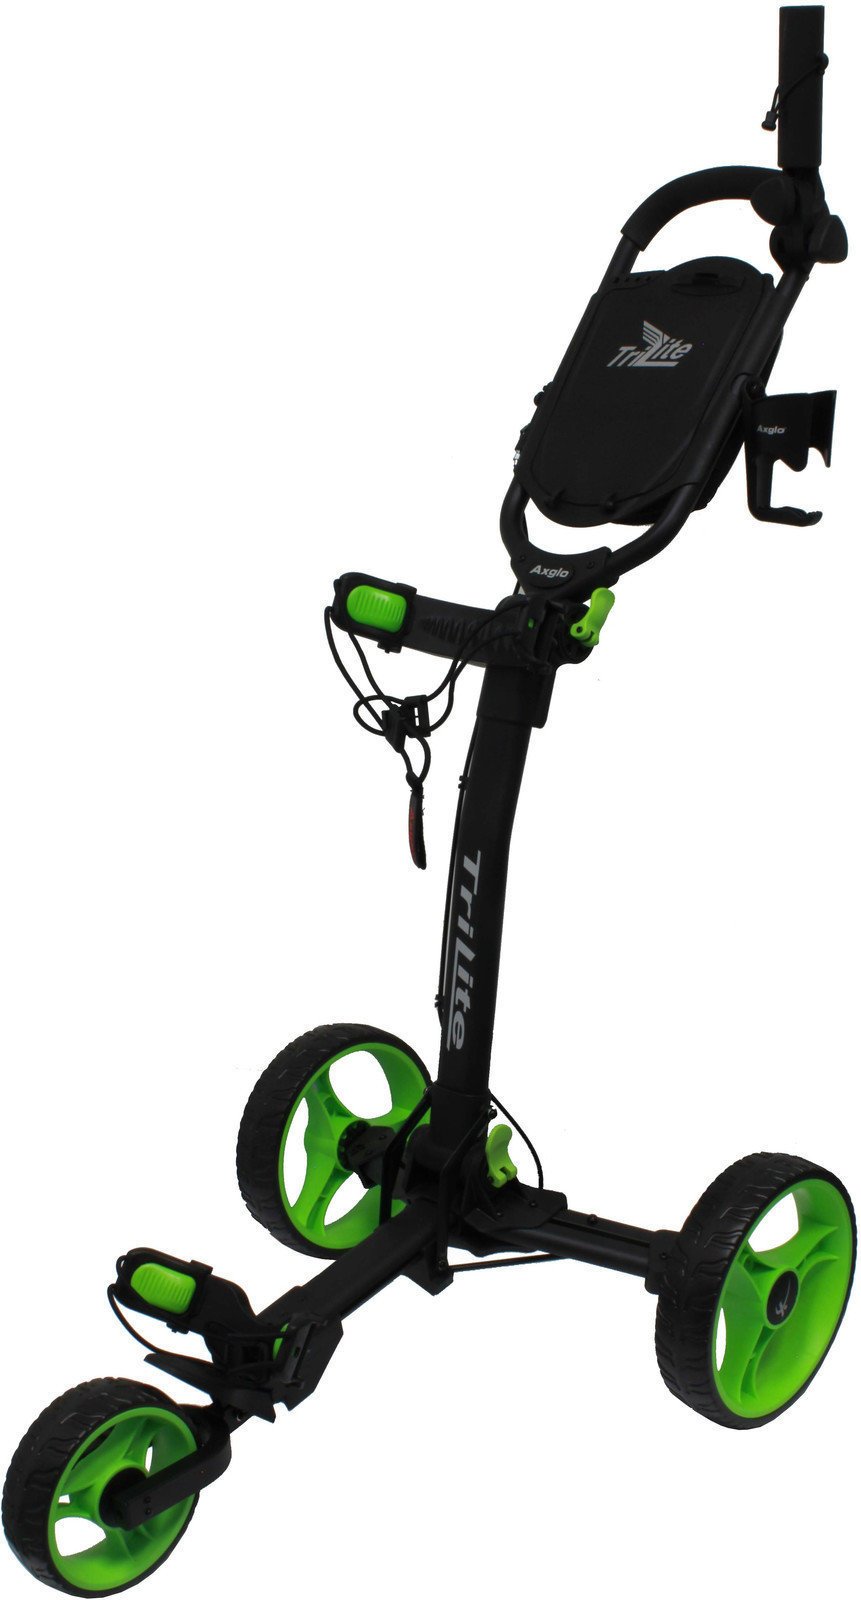 Wózek golfowy ręczny Axglo TriLite Black/Green Wózek golfowy ręczny